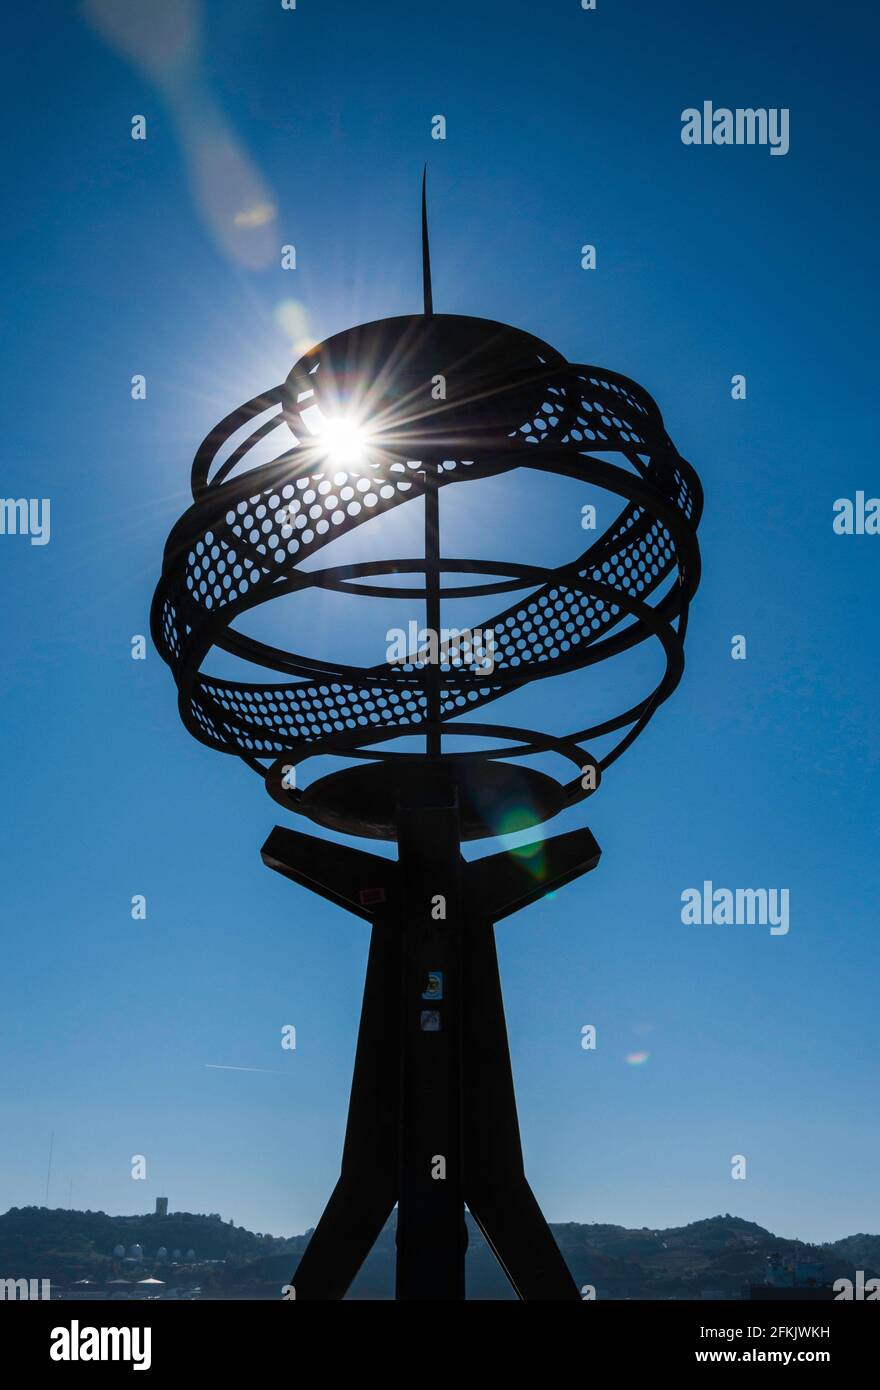 Escultura de una esfera armpilar (máquina mundial) en el barrio de Belem de Lisboa. Foto retroiluminada a la hora azul Foto de stock